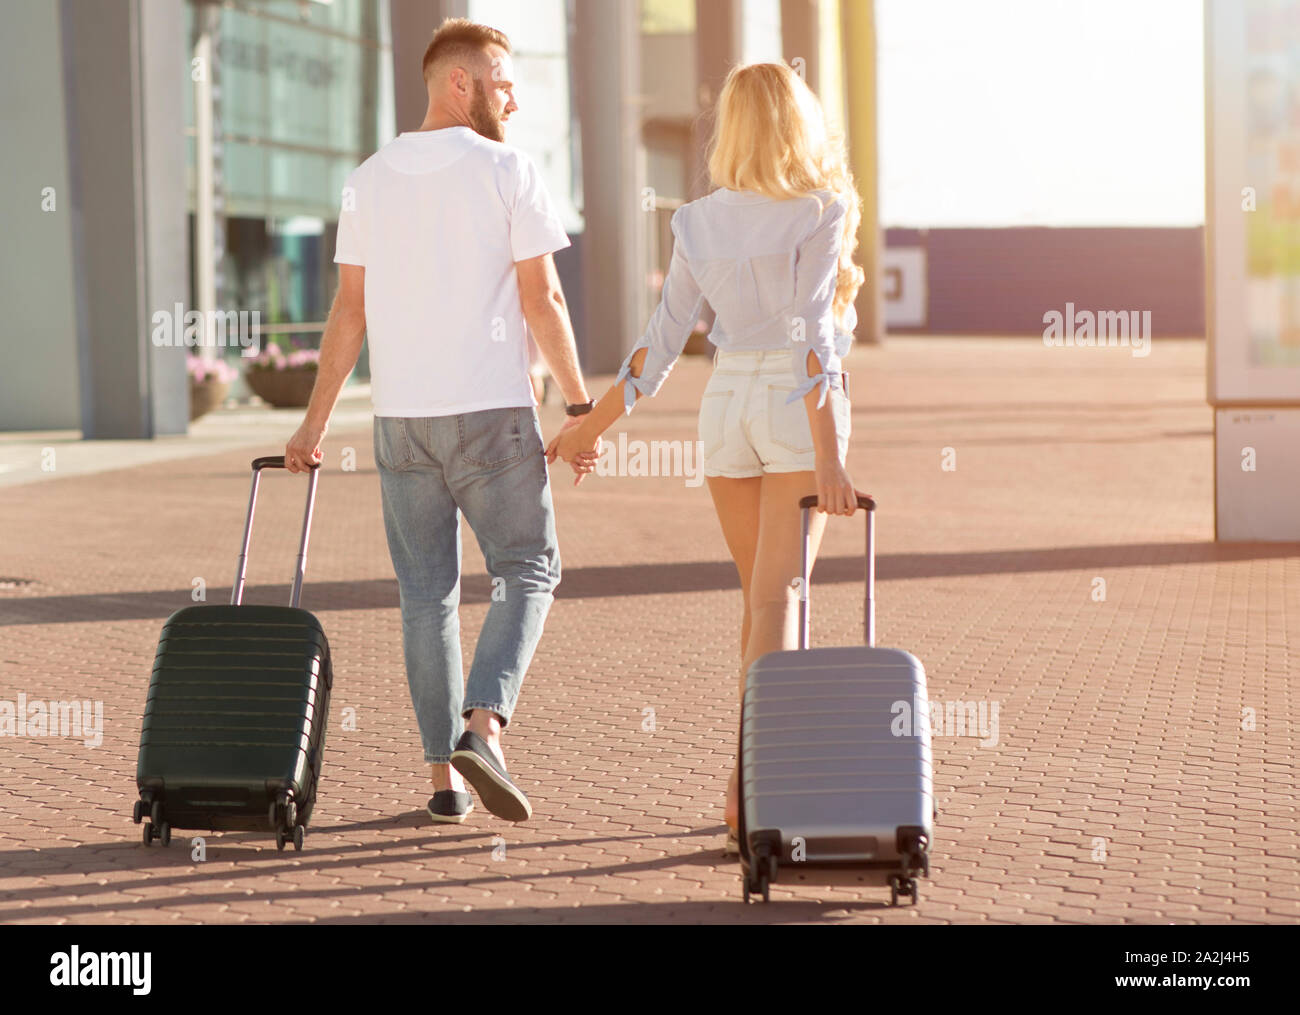 When you arrive at the airport. Девушка тащит чемодан в аэропорту. Чемодан таскаю в аэропорту Сочи. Человек прижимает к себе чемодан. Стащил чемодан у женщины в аэропорту.